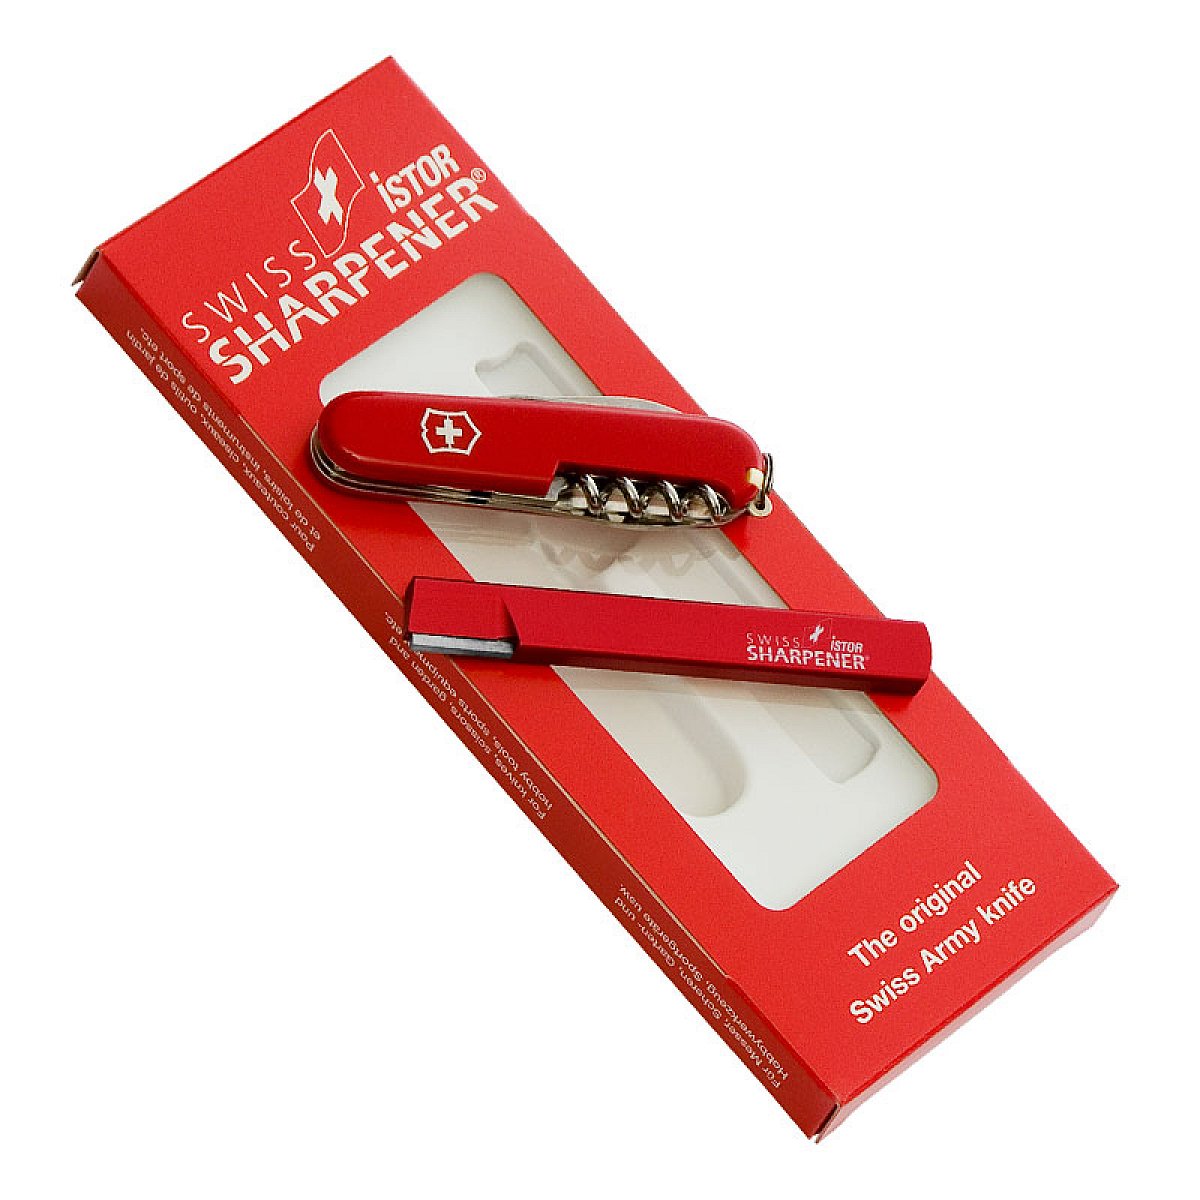 Sharp gift set - Victorinox pocket knife with knife sharpener